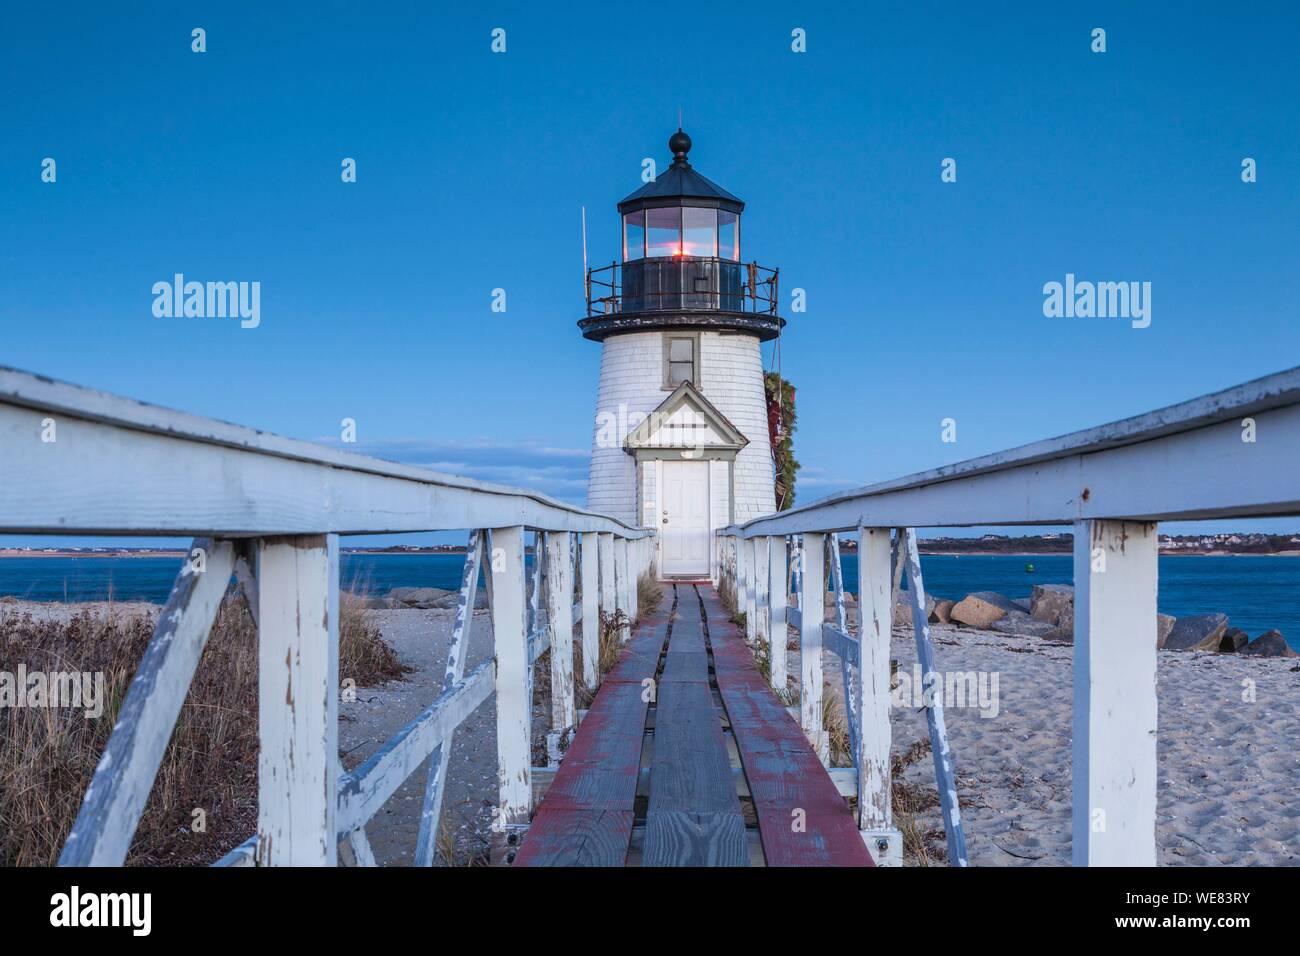 United States, New England, New Jersey, l'île de Nantucket, Nantucket, Brant Point Lighthouse avec une couronne de Noël, dusk Banque D'Images